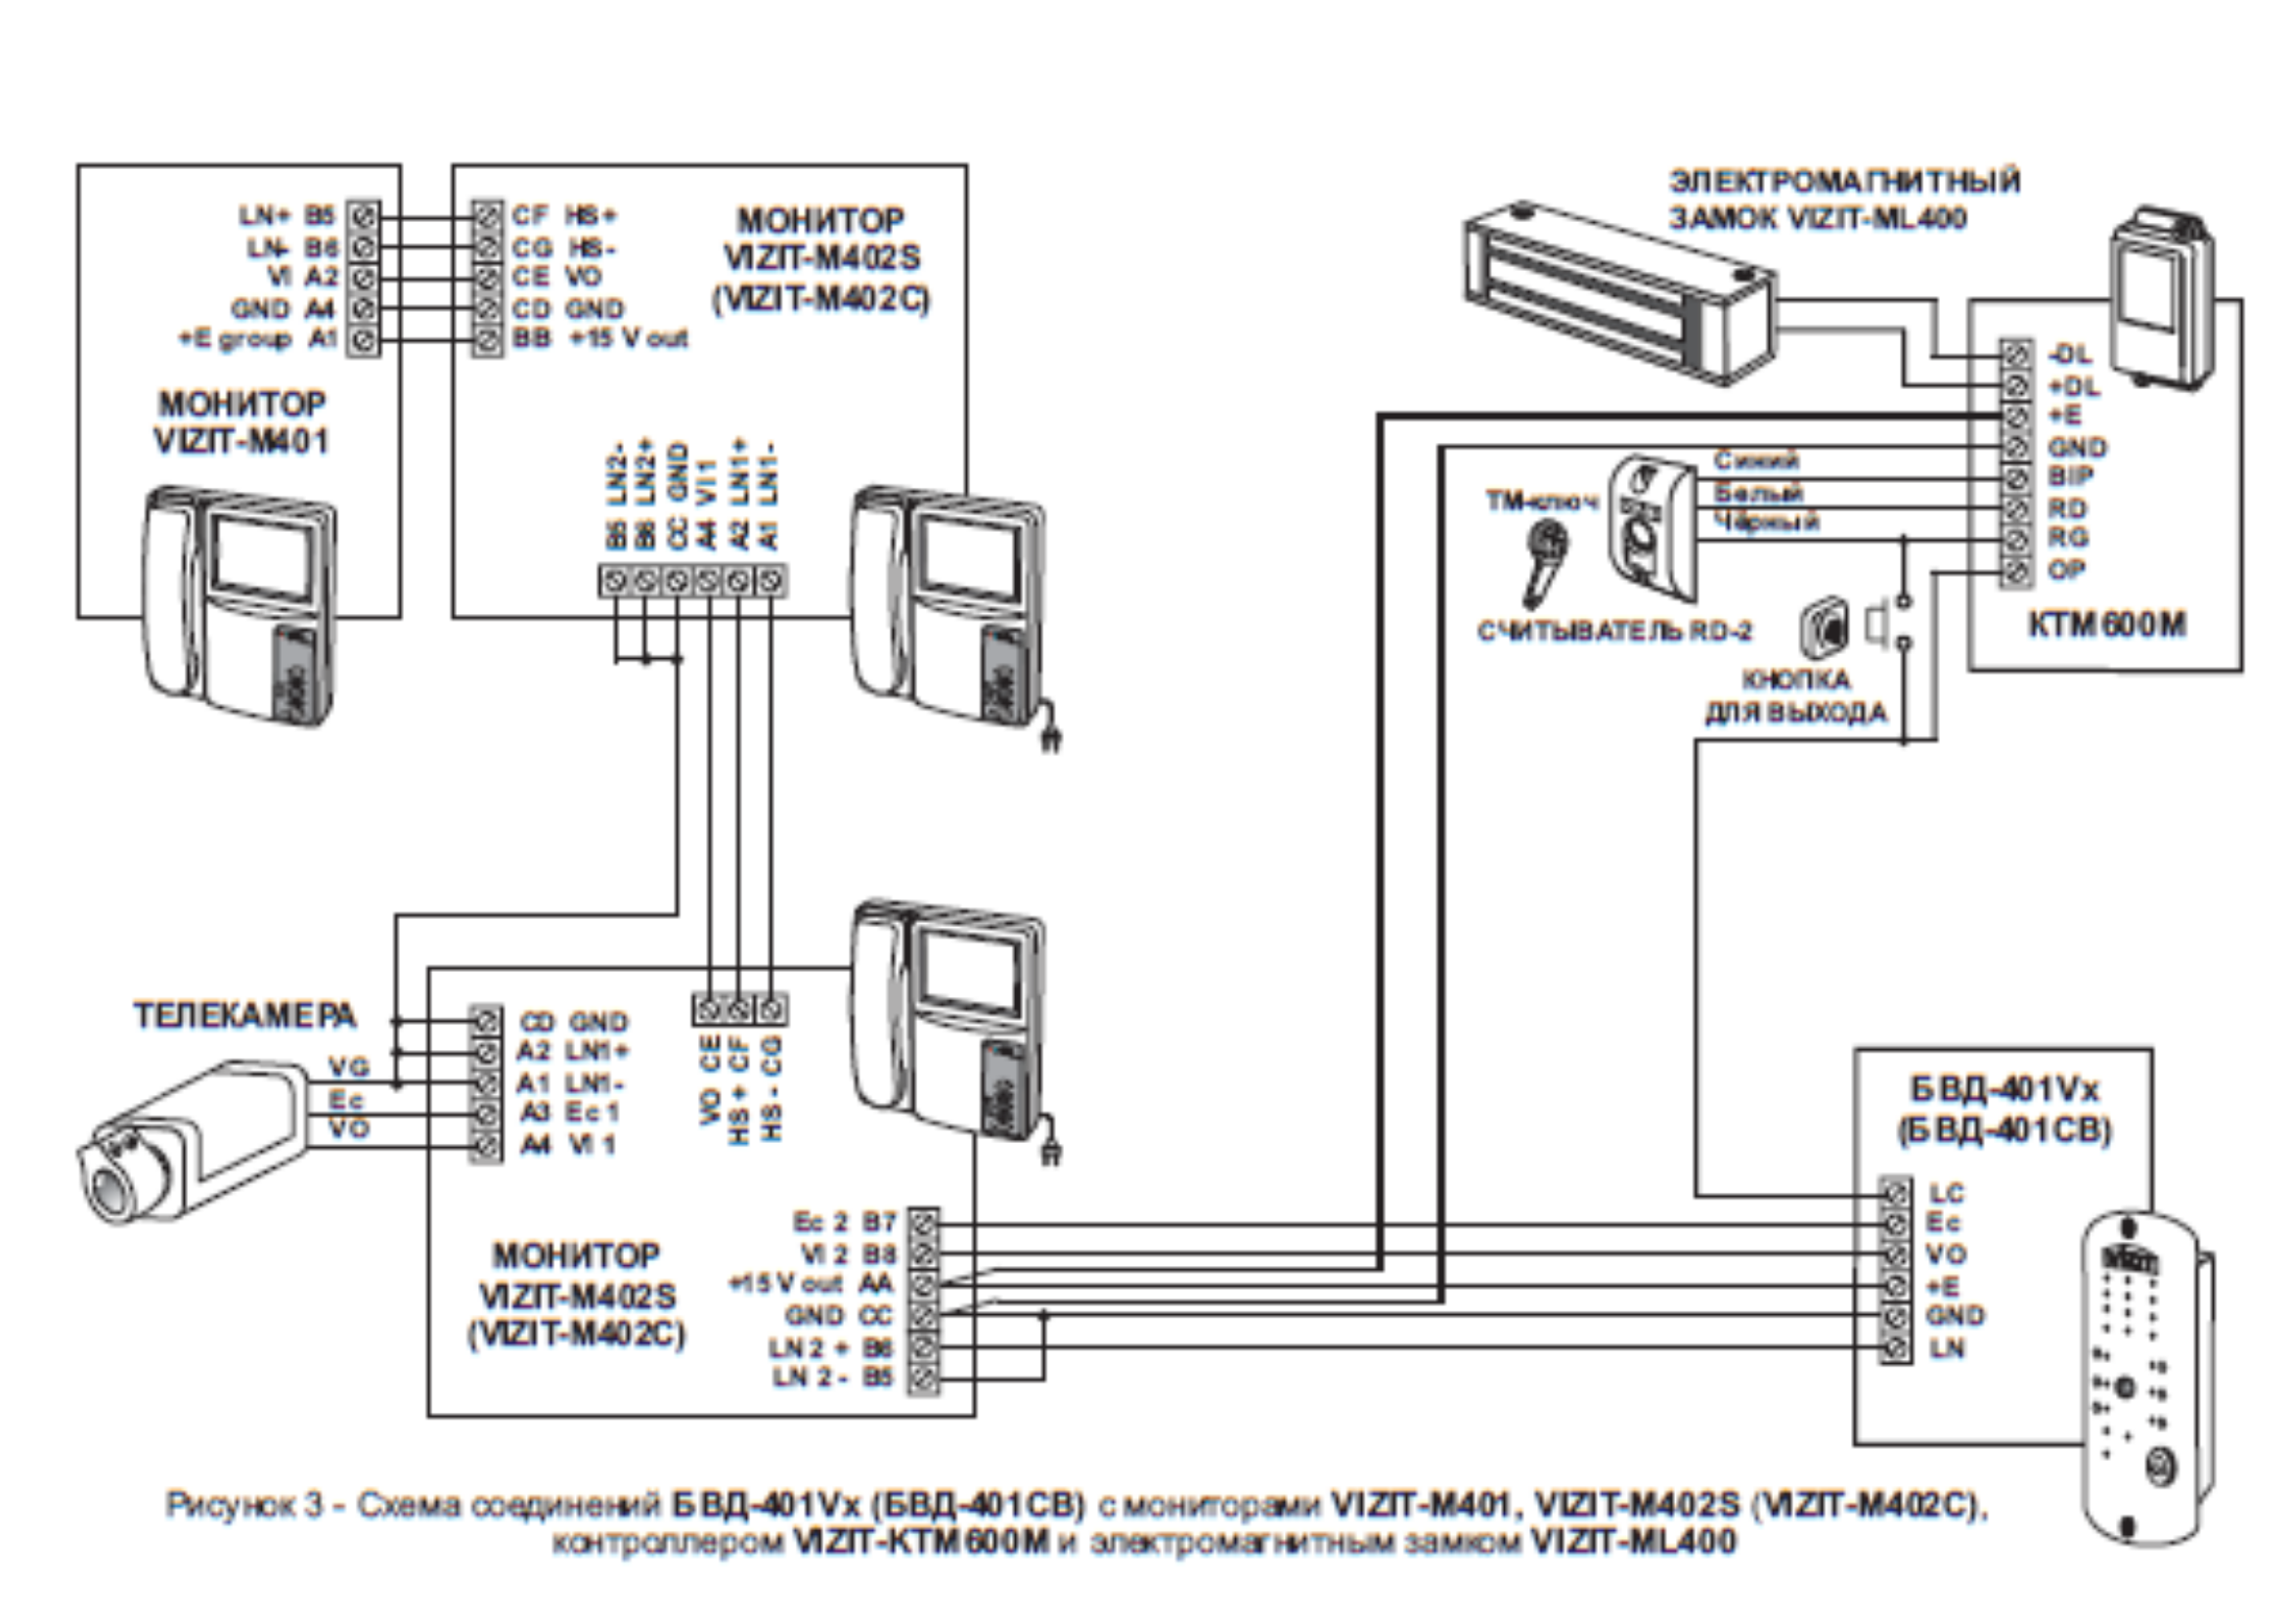 Схема соединений с мониторами контроллером и электромагнитным замком